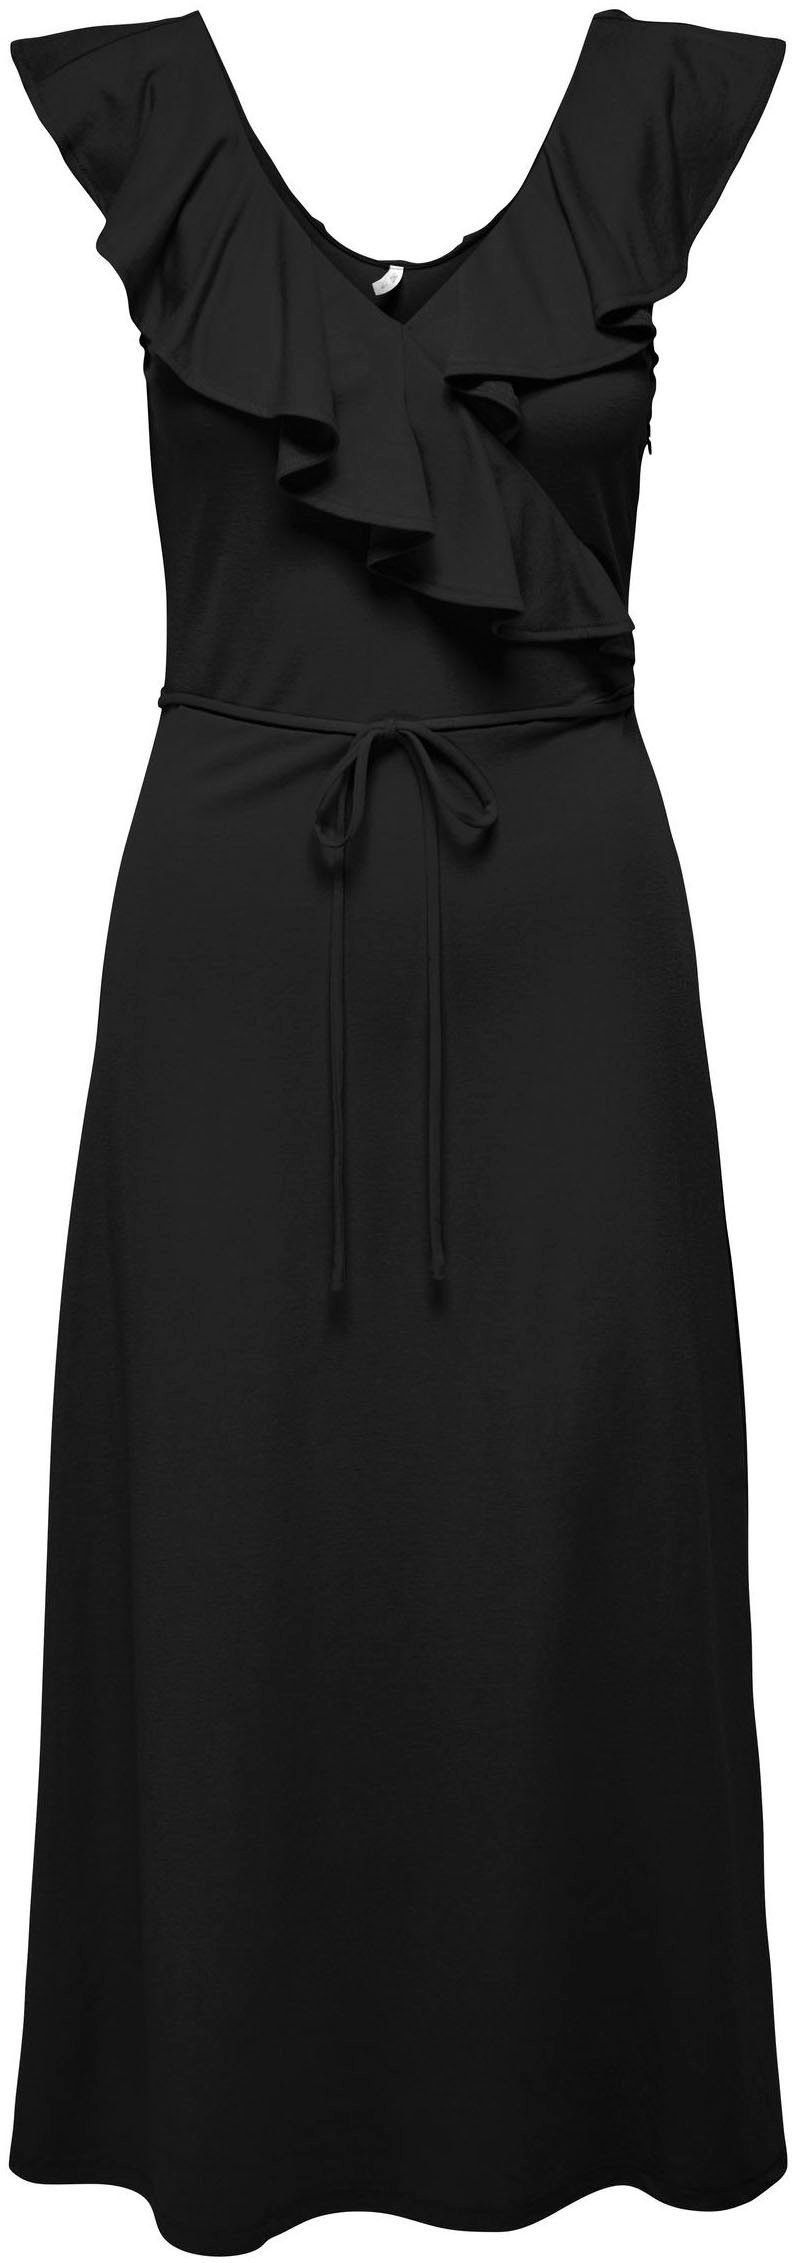 JRS ONLY ONLJANY Black S/L Sommerkleid FRILL DRESS